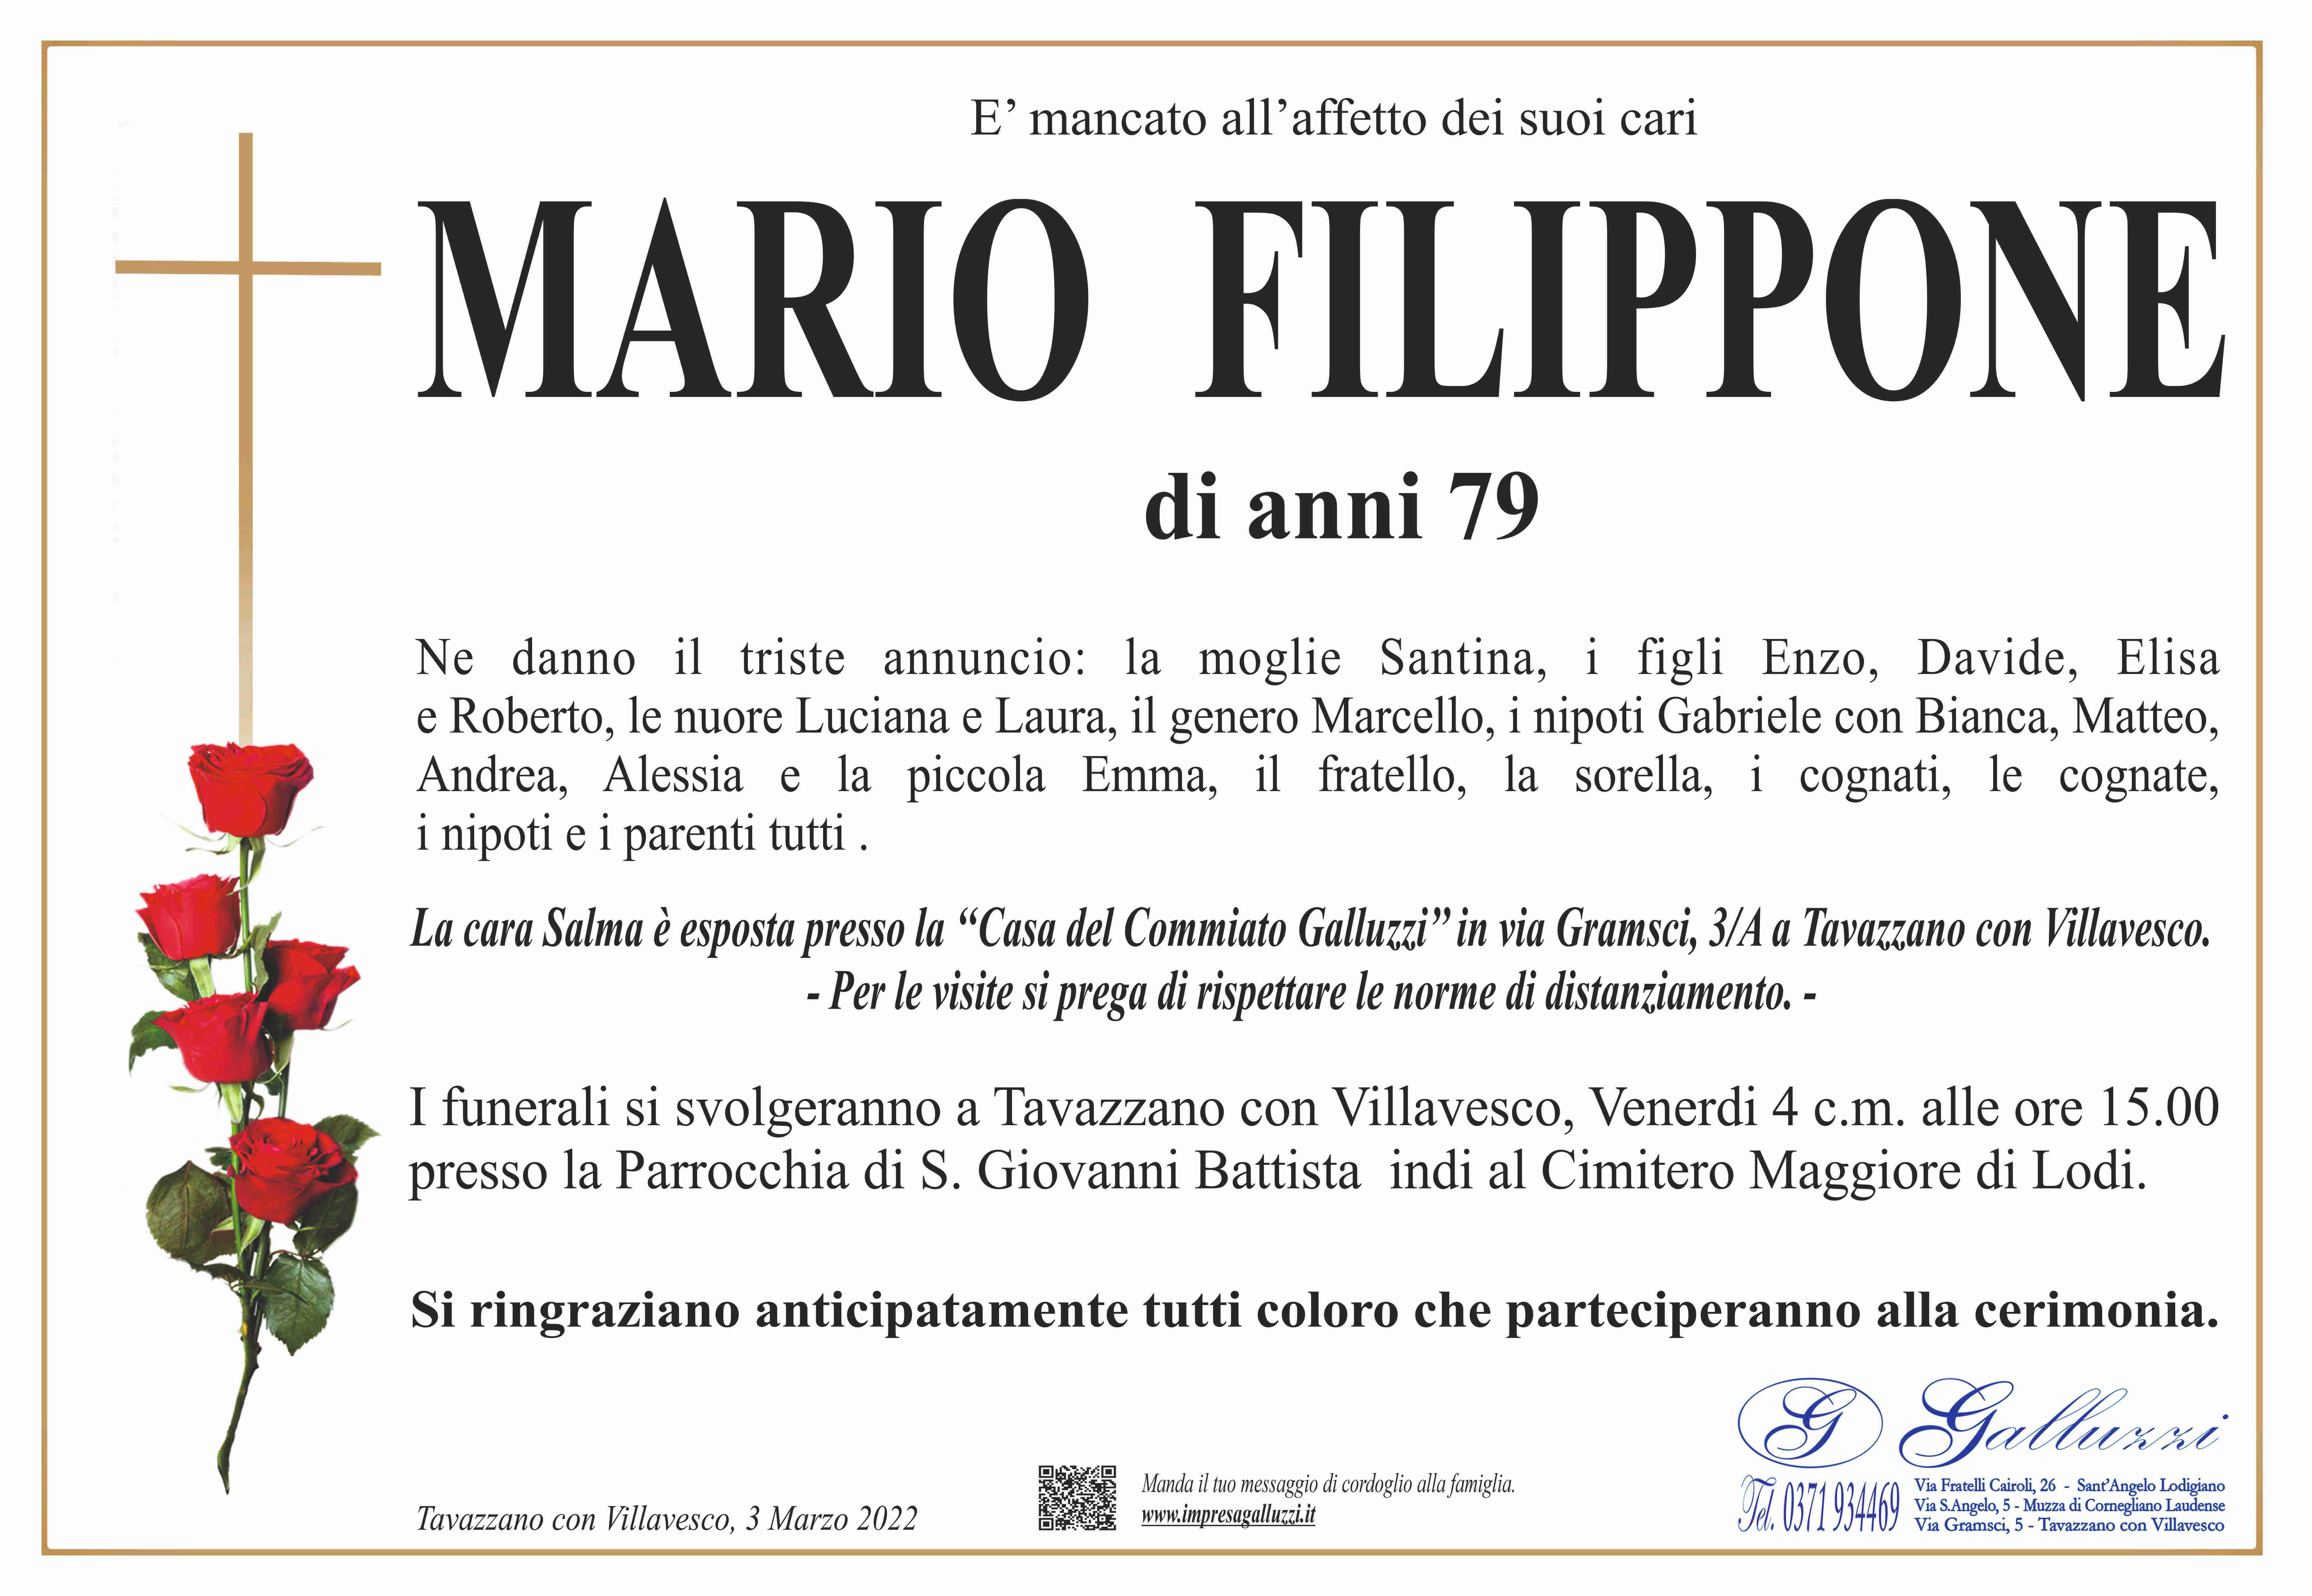 Mario Filippone